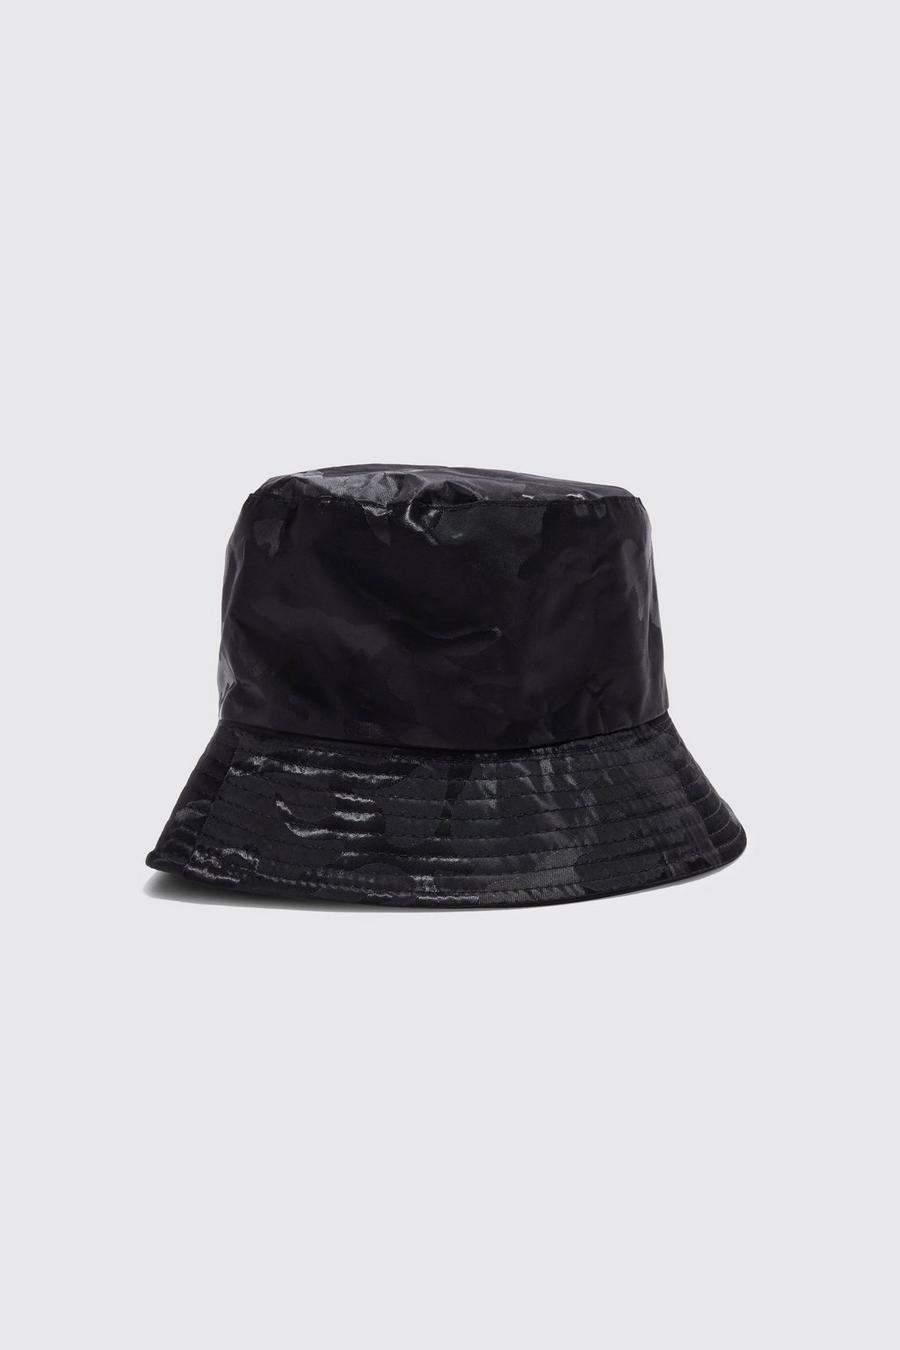 czarny kapelusz bucket wzór moro